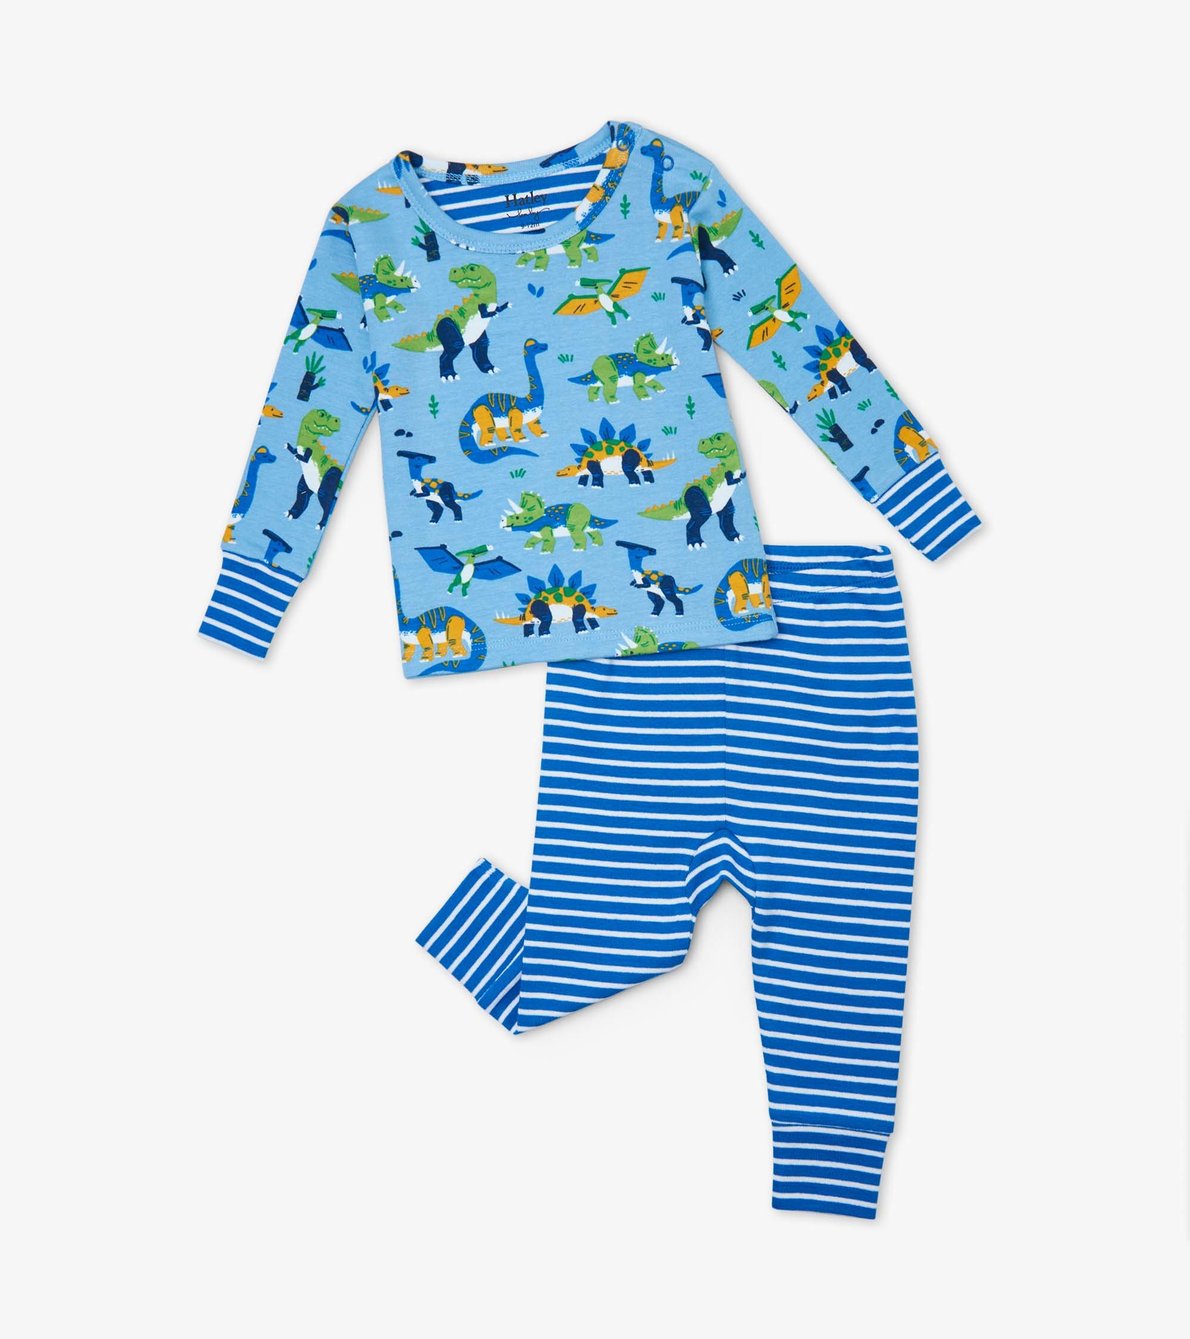 View larger image of Curious Dinos Organic Cotton Baby Pajama Set